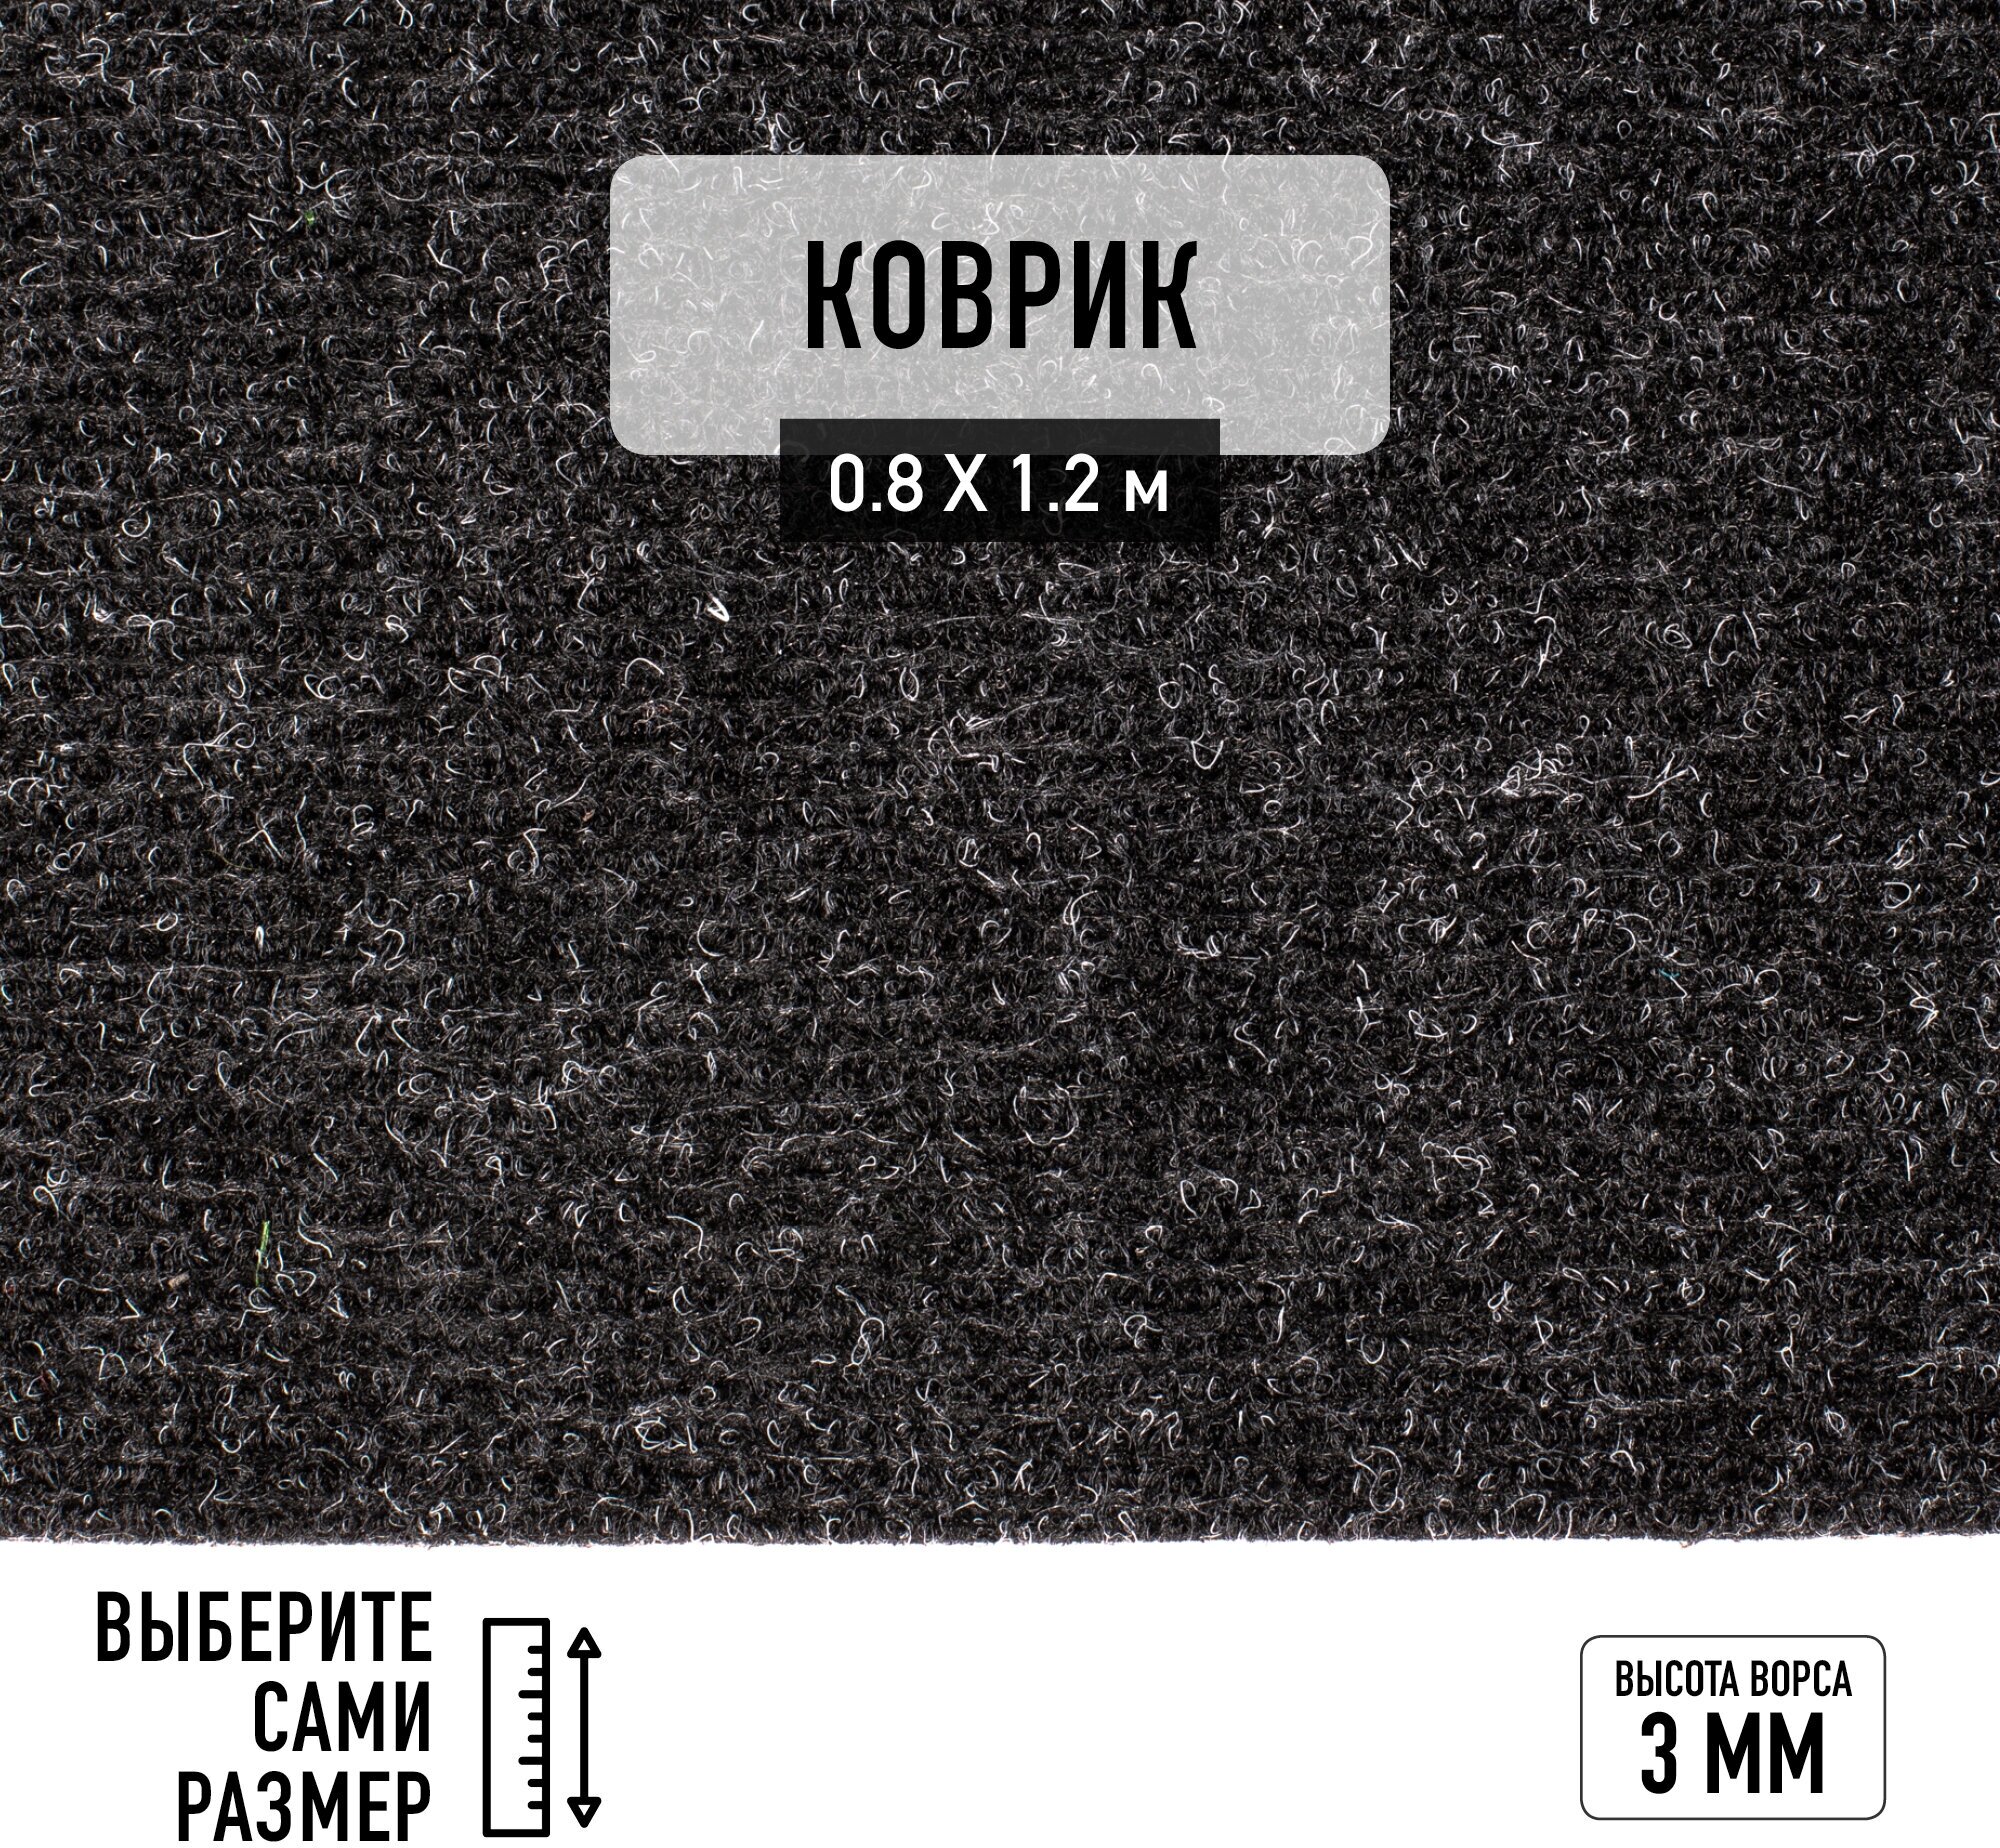 Иглопробивной коврик входной грязезащитный Betap "Dessert 78" на пол. Ковер черного цвета, размер 0,8х1,2м.